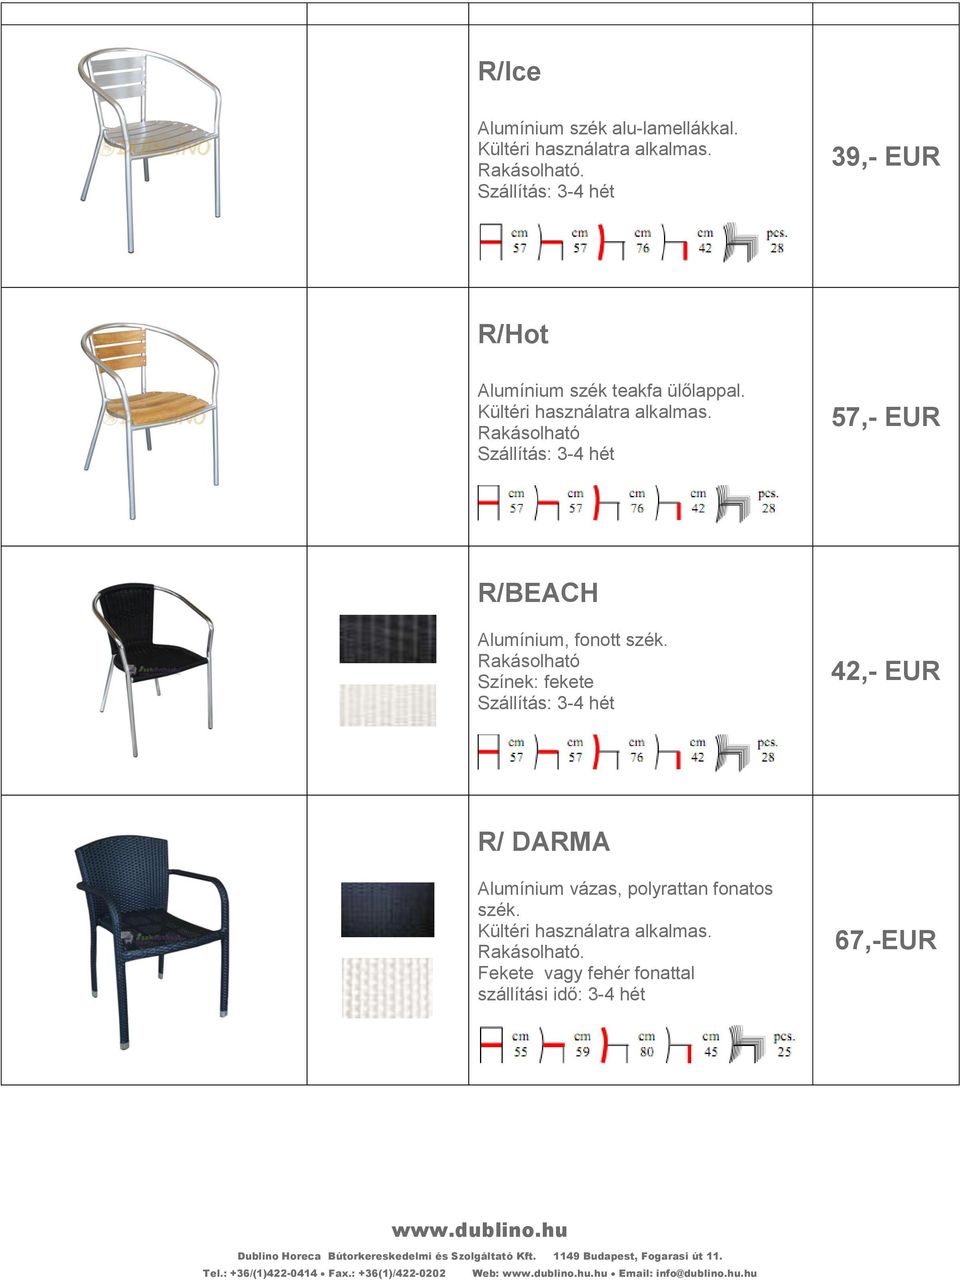 Rakásolható 57,- EUR R/BEACH Alumínium, fonott szék.